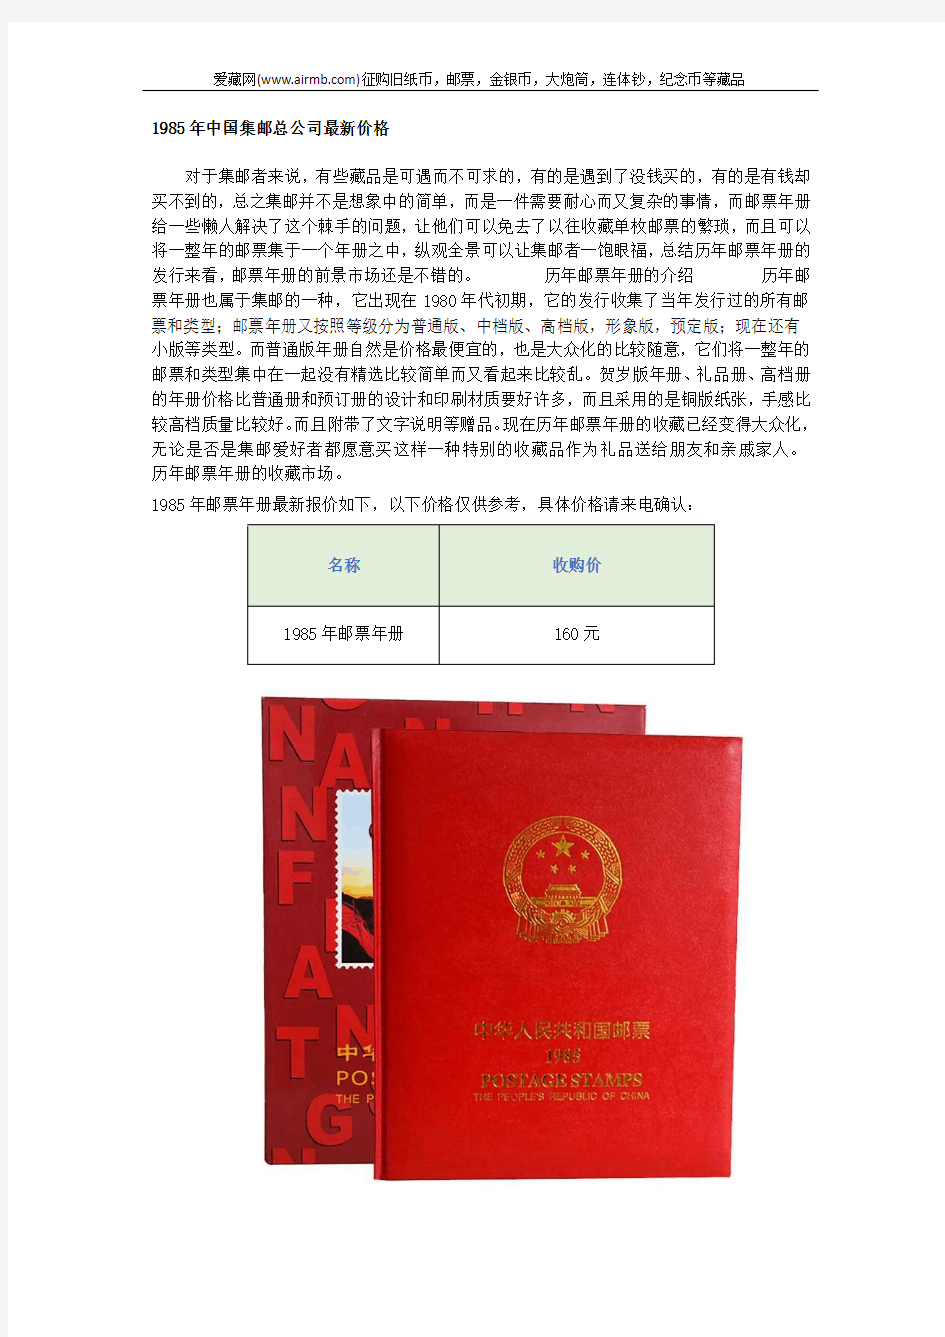 1985年中国集邮总公司最新价格